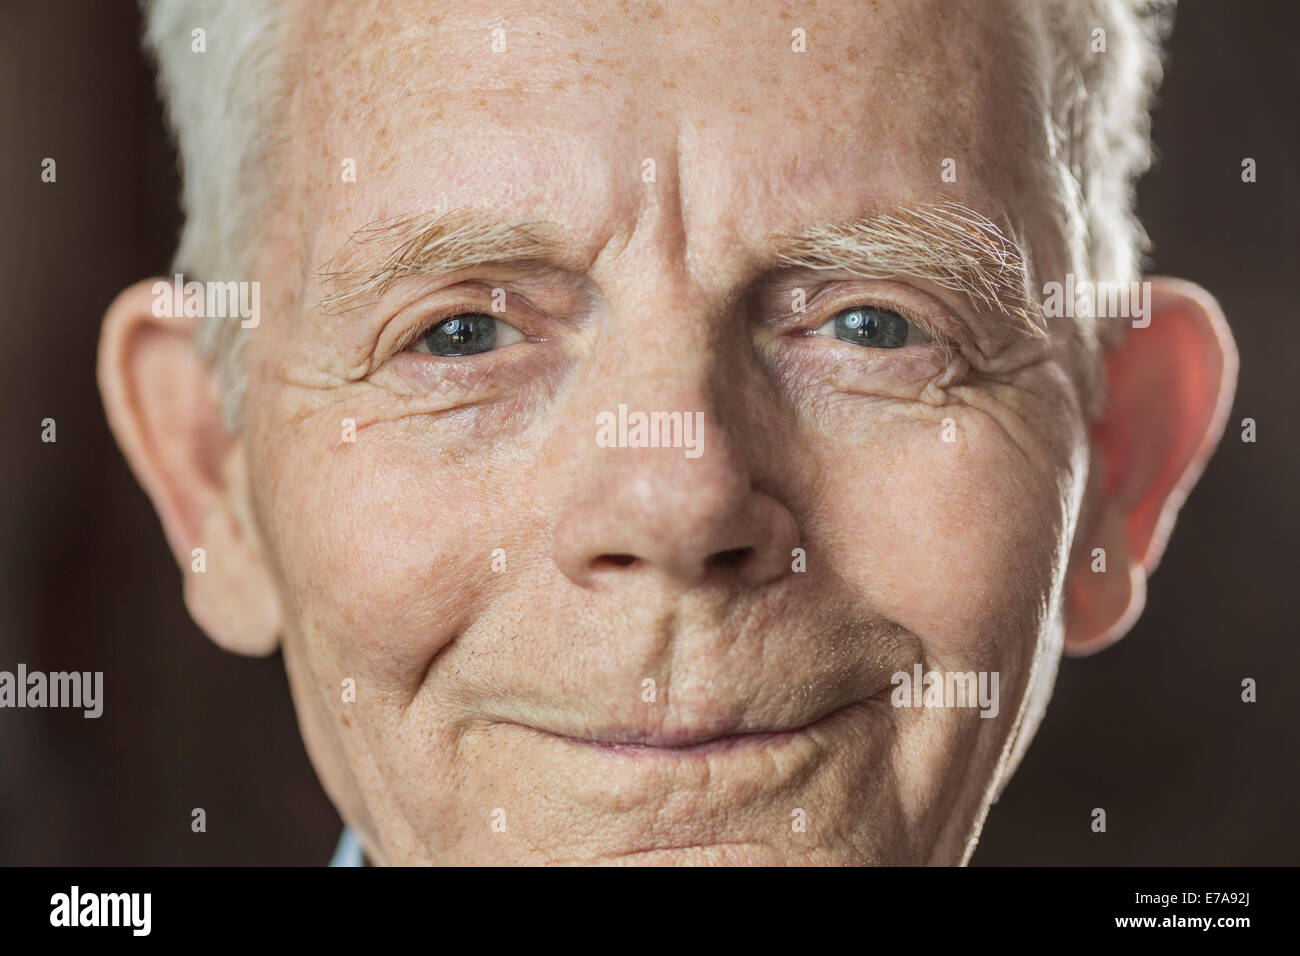 Close-up Portrait des Lächelns senior woman über farbigen Hintergrund Stockfoto